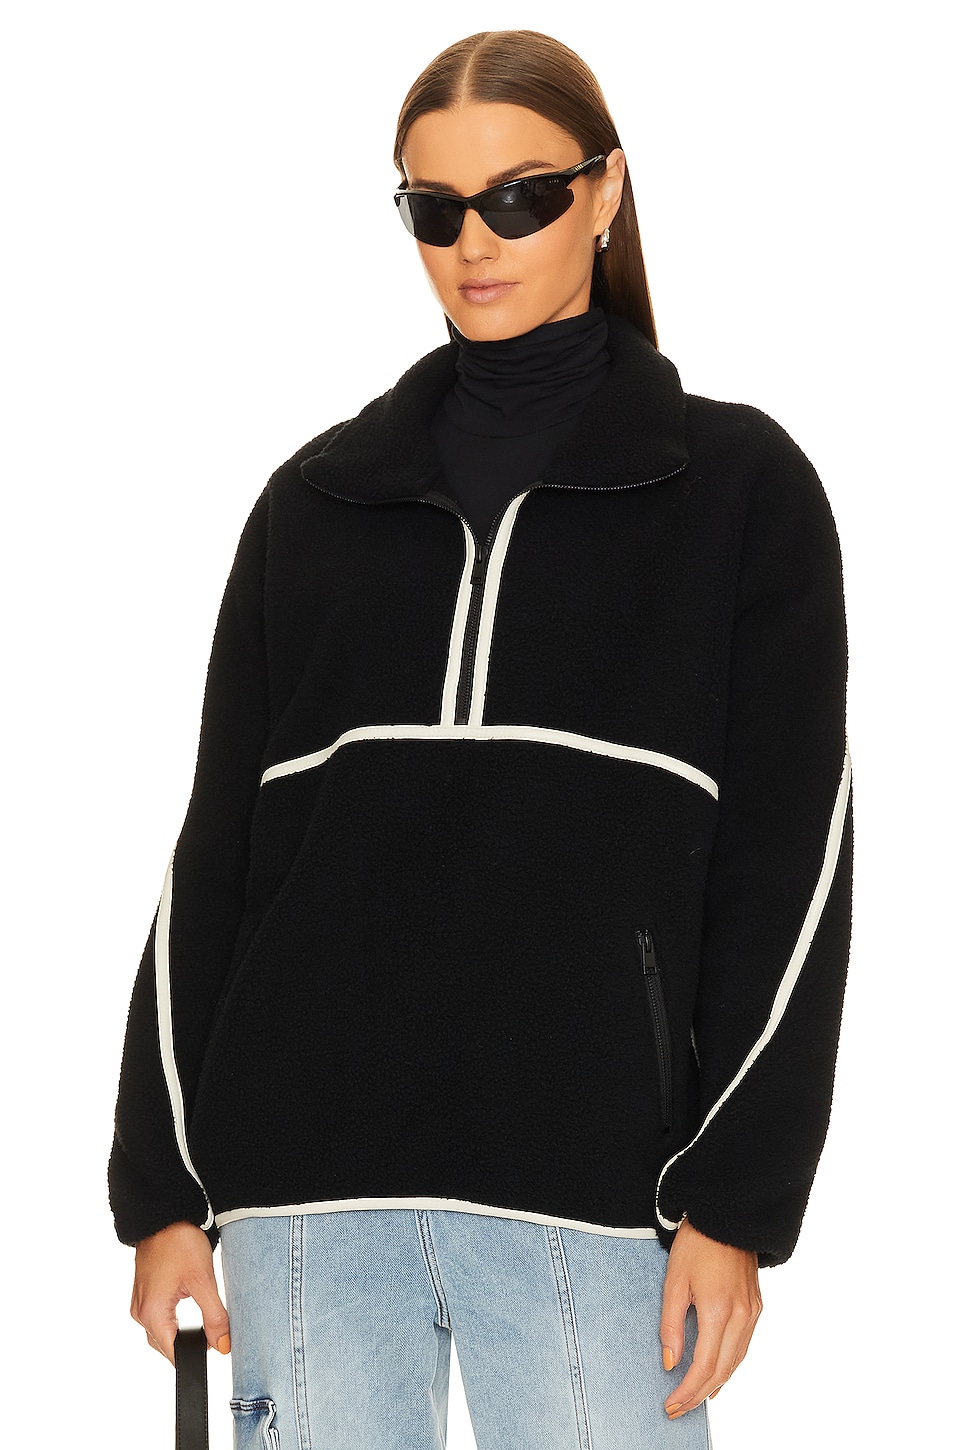 куртка lamarque helsa fleece цвет black Куртка LAMARQUE Helsa Fleece, цвет Black & Ivory